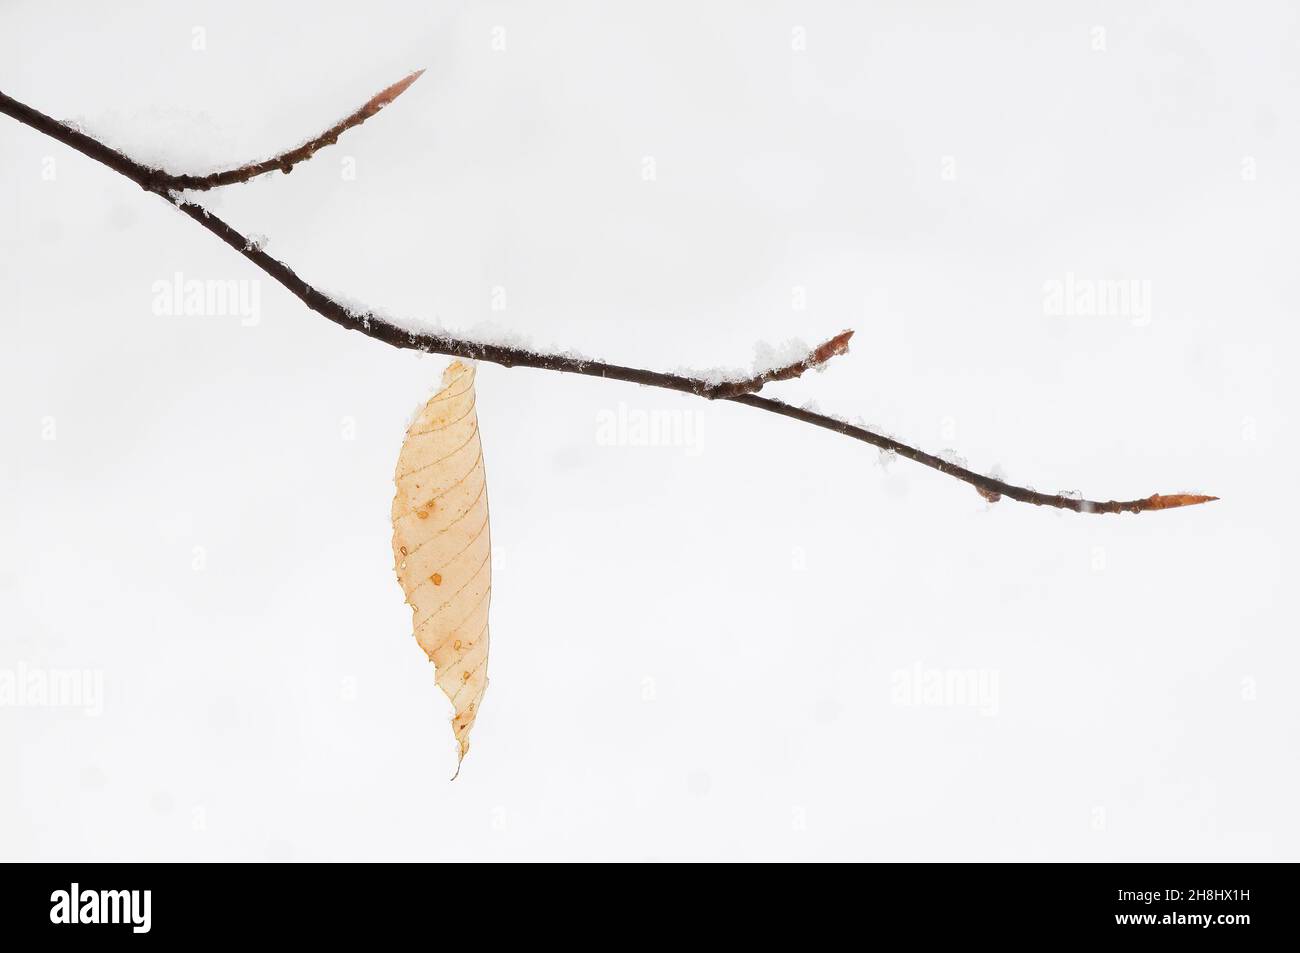 La próxima temporada de brotes de hojas de playa y solitaria última hoja en la nieve de invierno Foto de stock